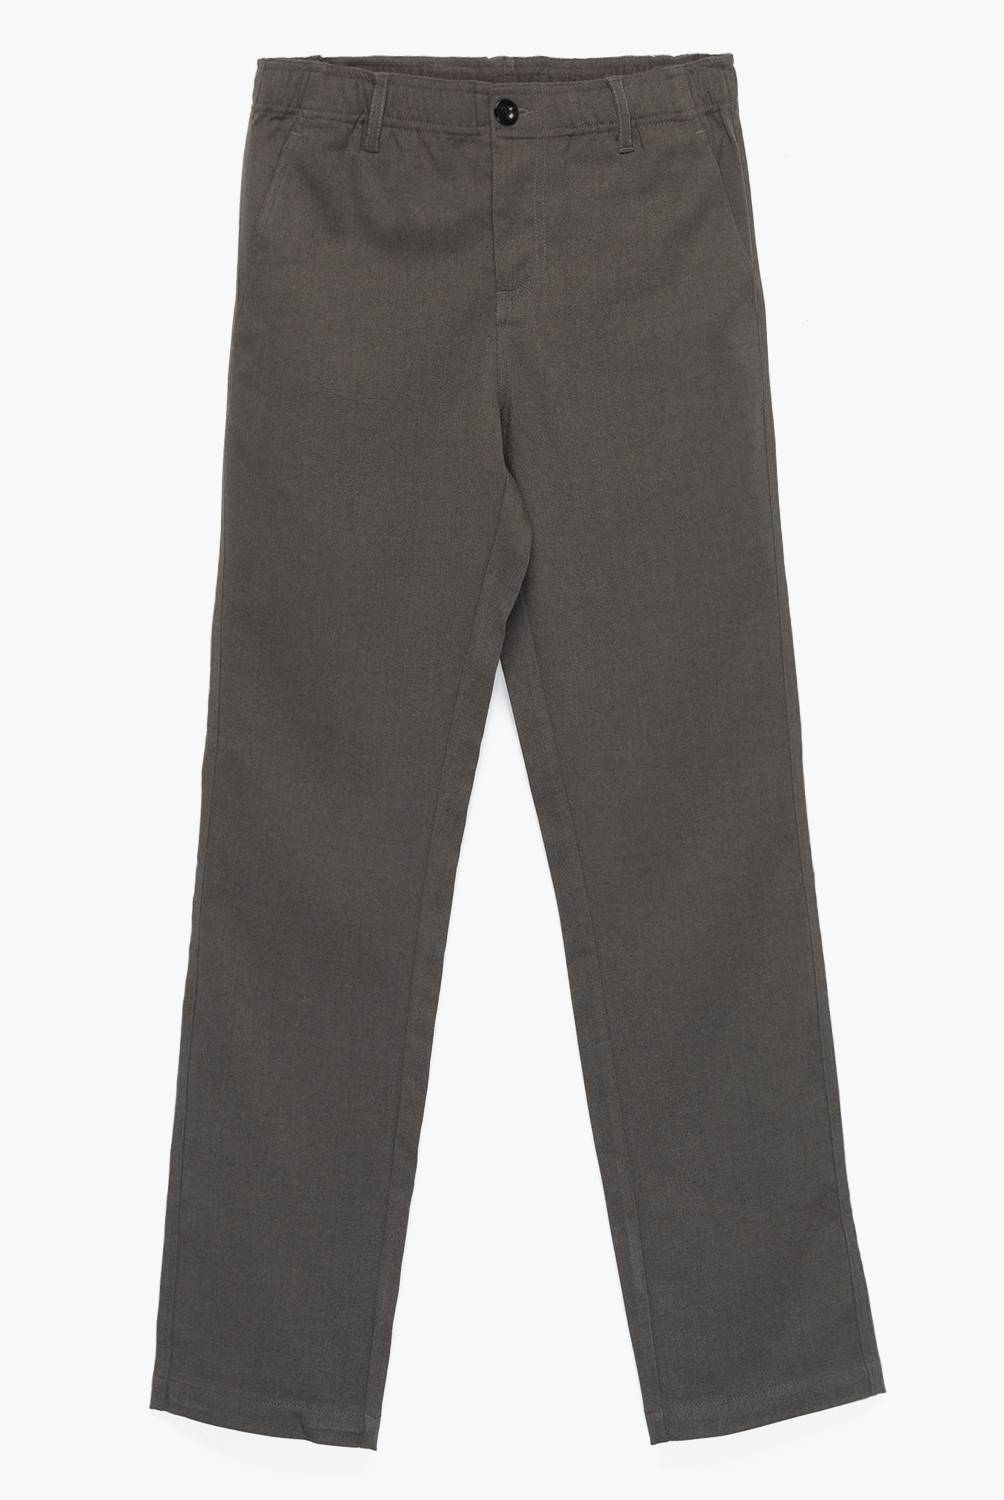 O'NEILL - Oneill Pantalón Escolar , Strech , Pretina 10%  Elasticada ,4 Bolsillos , Color Gris Niño